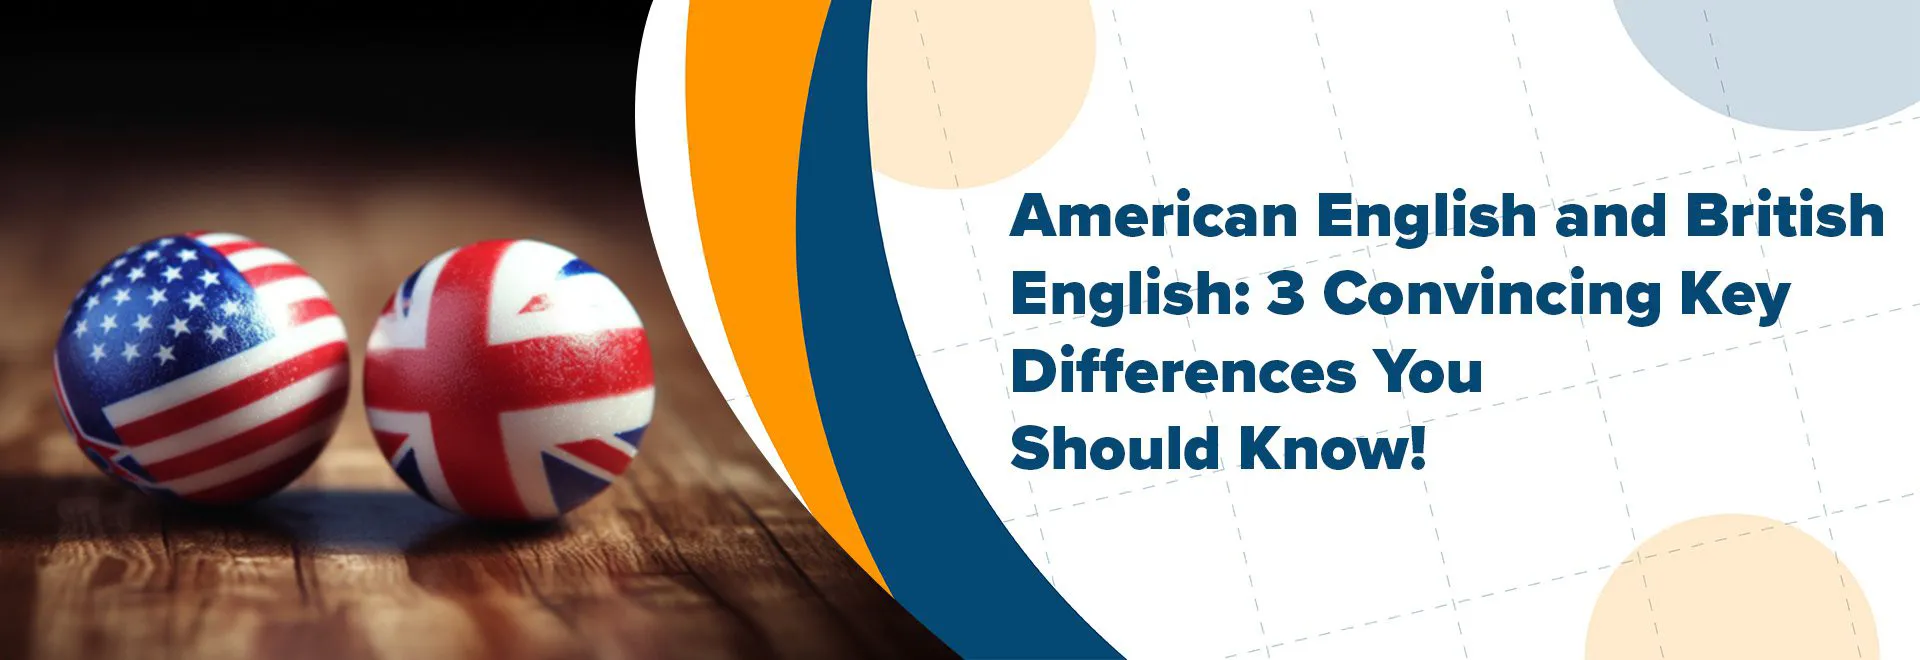 Америк англи хэл болон Британи англи хэл: Заавал мэдэх ёстой 3 ялгаа